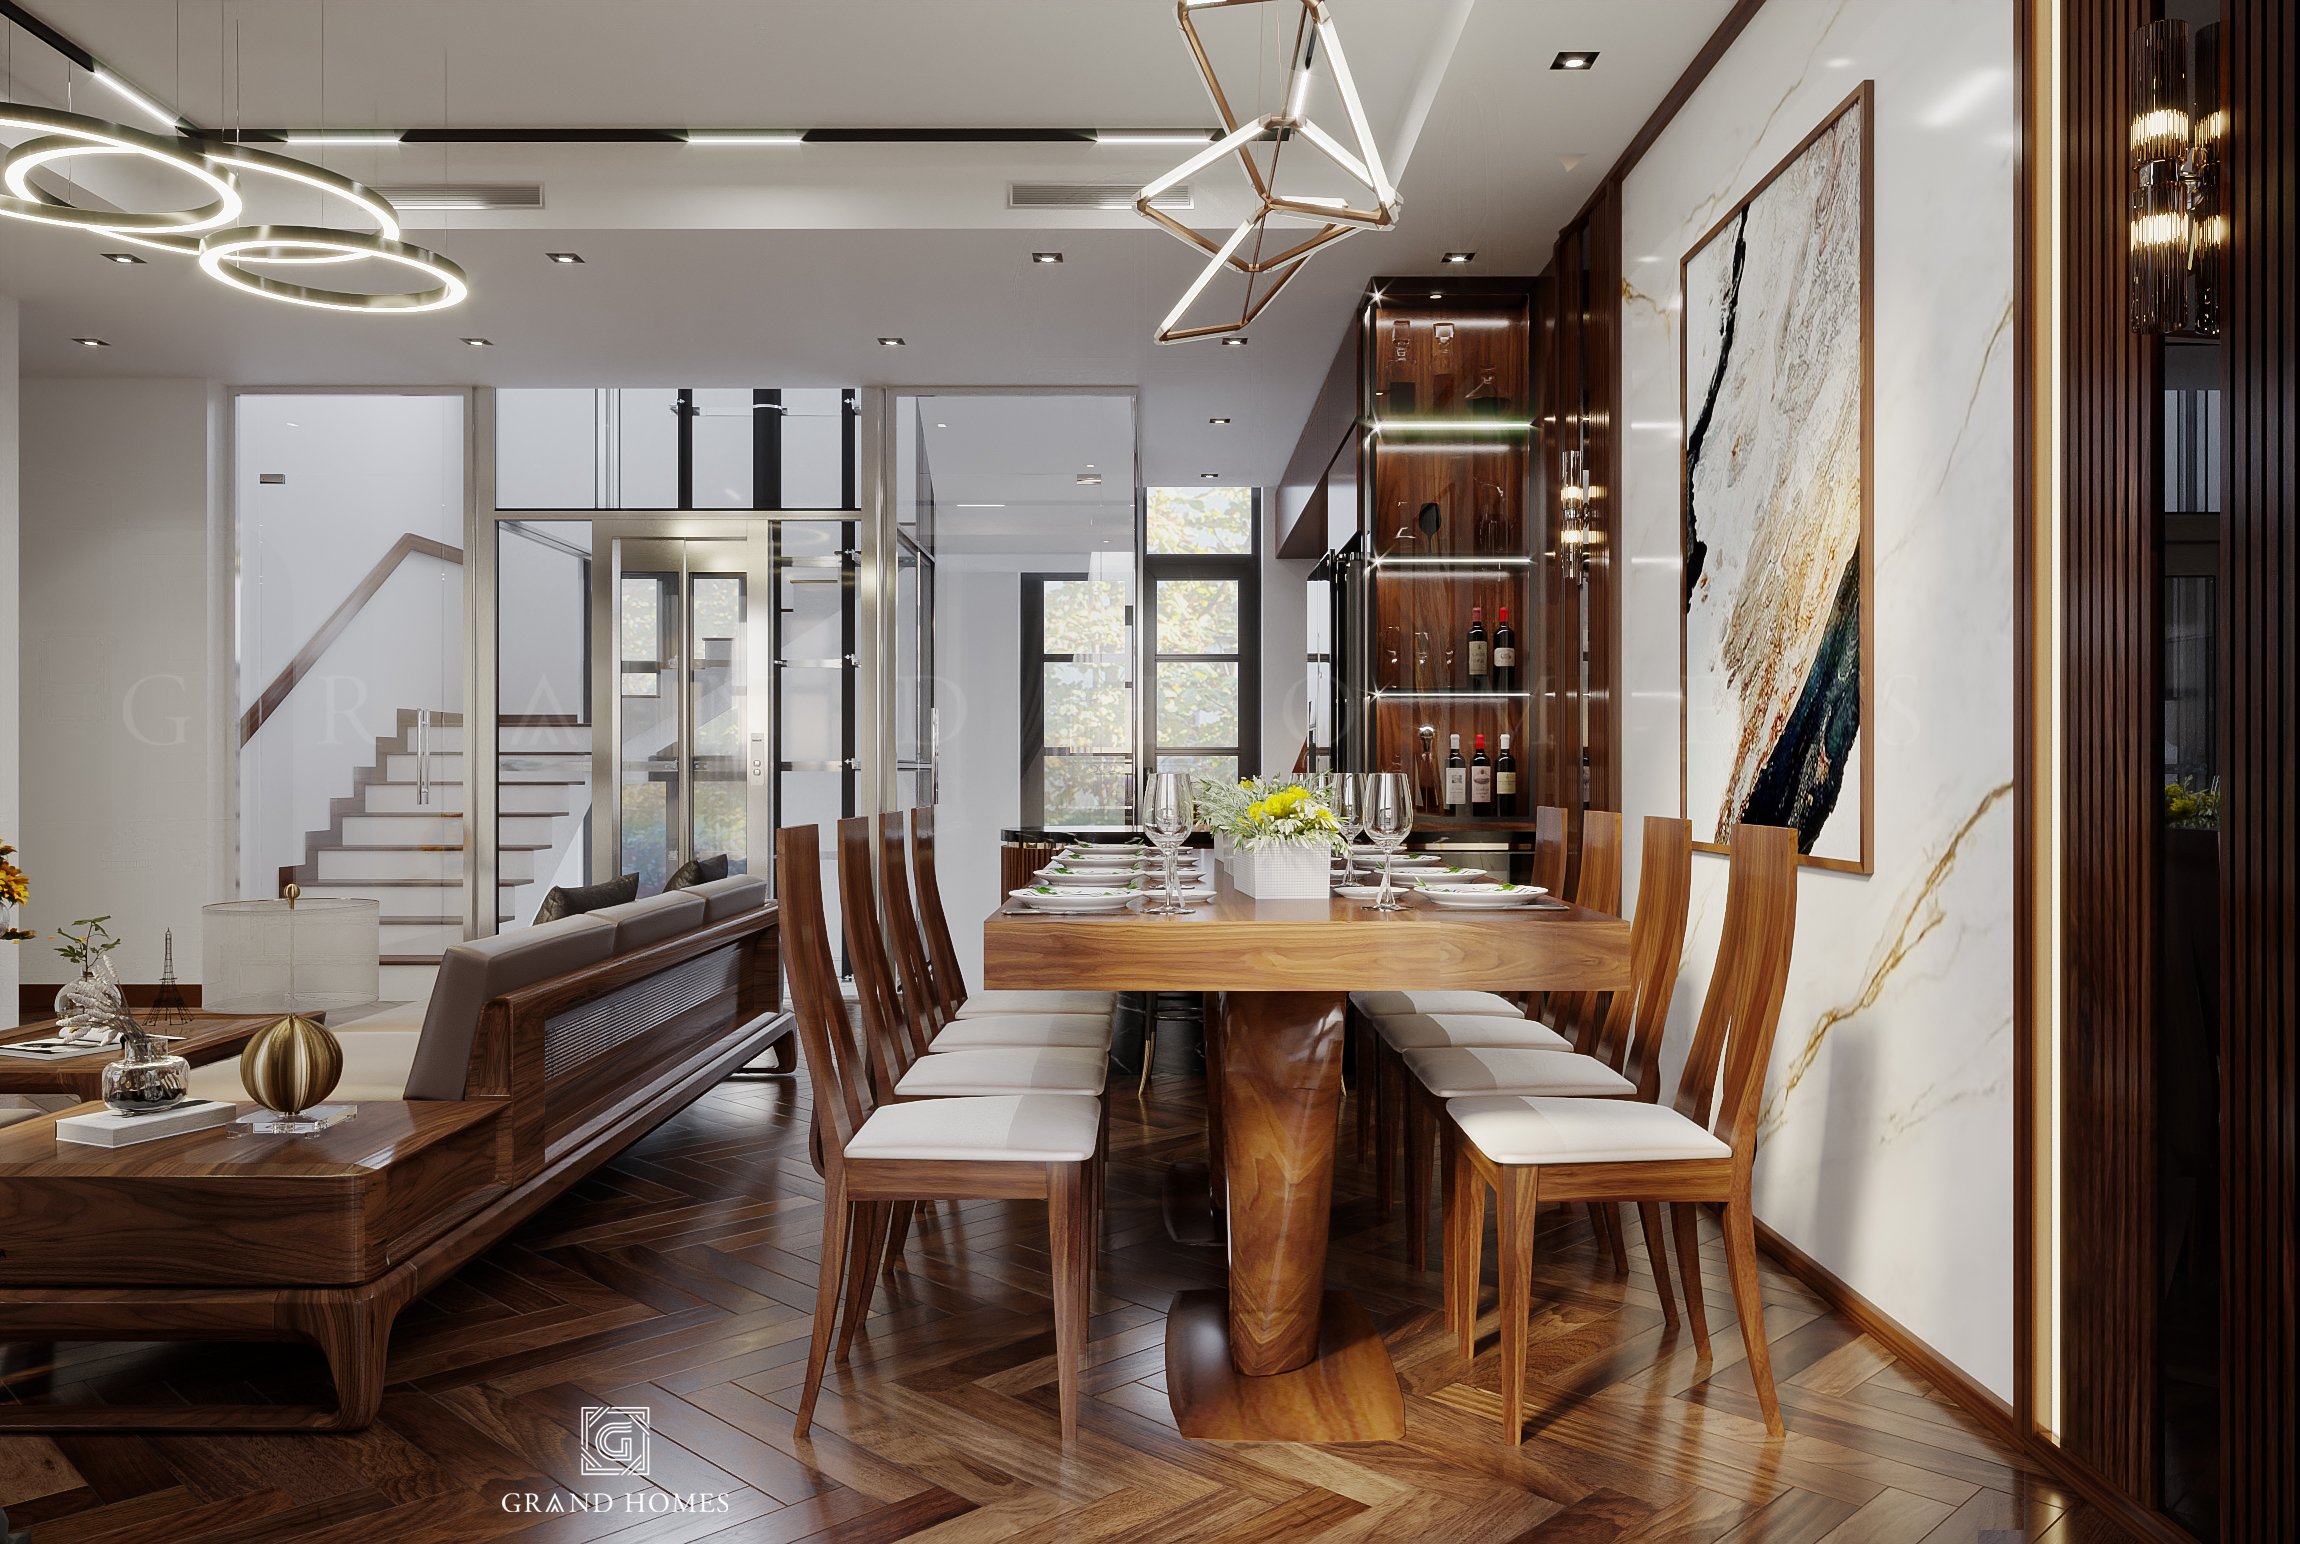 Các vật liệu, nội thất có màu vân gỗ được ưu tiên sử dụng